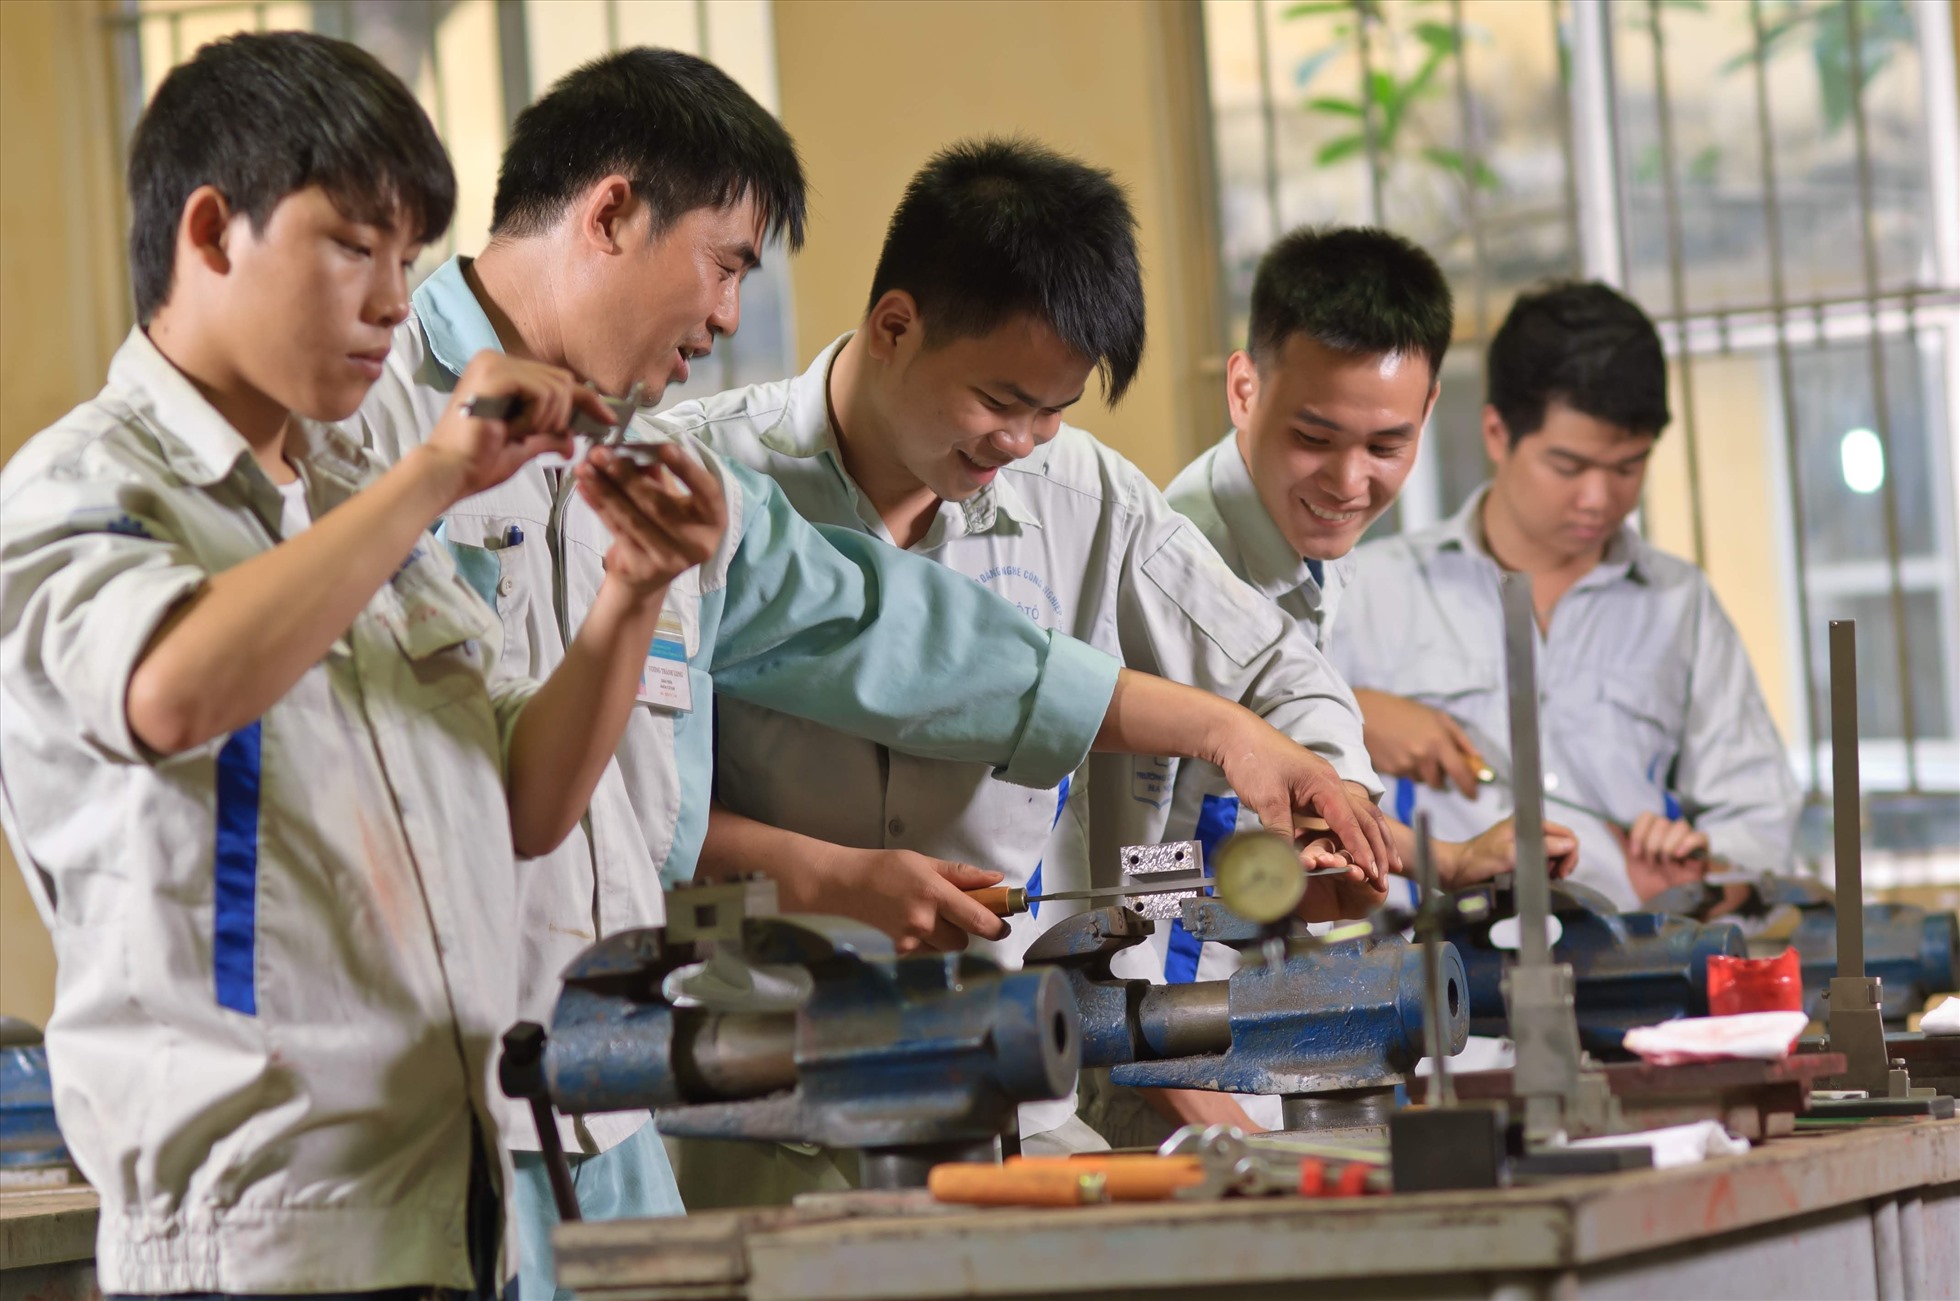 Chú thích: Năm 2023 sẽ thanh tra hàng loạt cơ sở giáo dục nghề nghiệp. Ảnh: Hải Nguyễn.